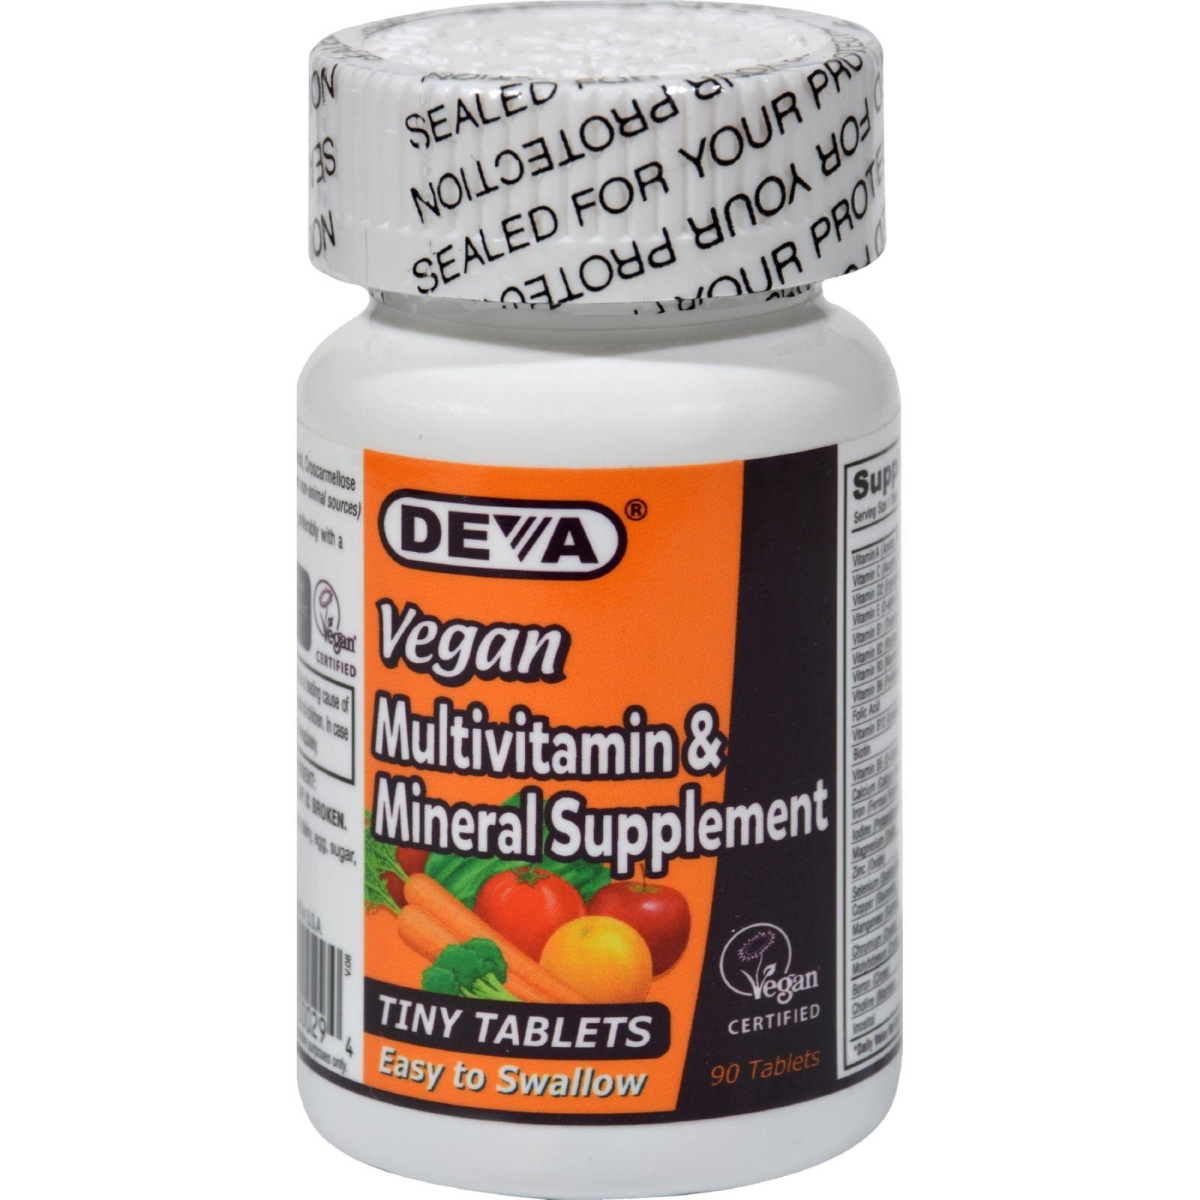 Hg0684209 Multivitamin & Mineral Supplement, 90 Tiny Tablets